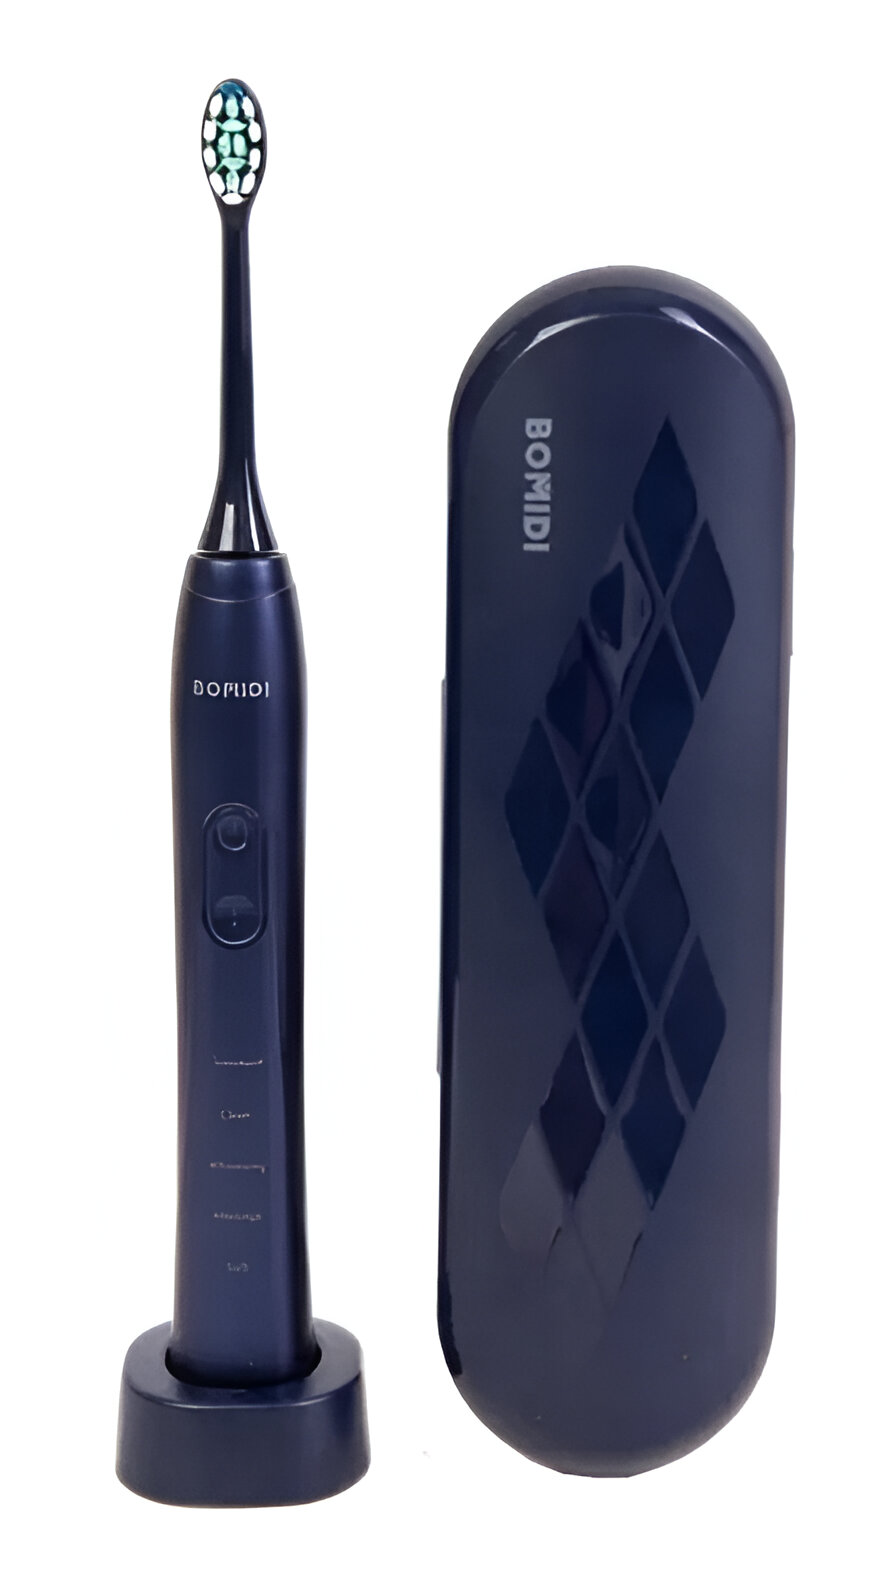 Электрическая зубная щетка Xiaomi Bomidi Electric Toothbrush Sonic TX5 Blue электрическая зубная щетка xiaomi bomidi electric toothbrush sonic tx5 blue